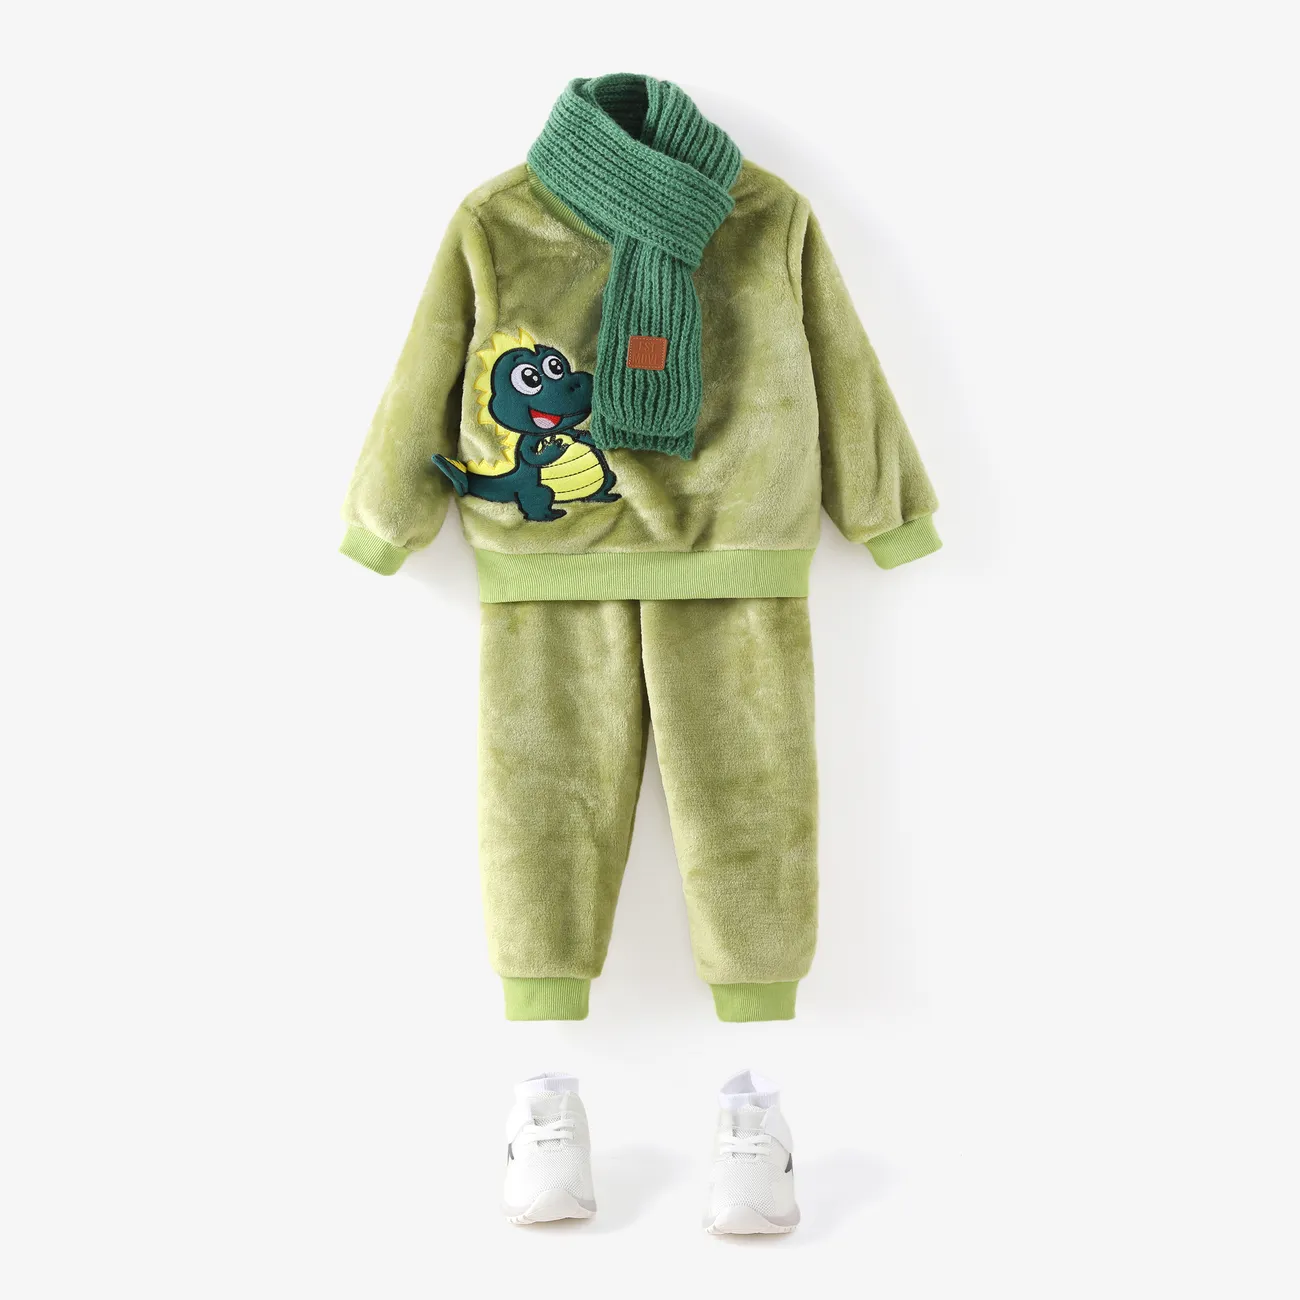 2 Stück Kleinkinder Jungen Kindlich Sweatshirt-Sets grün big image 1